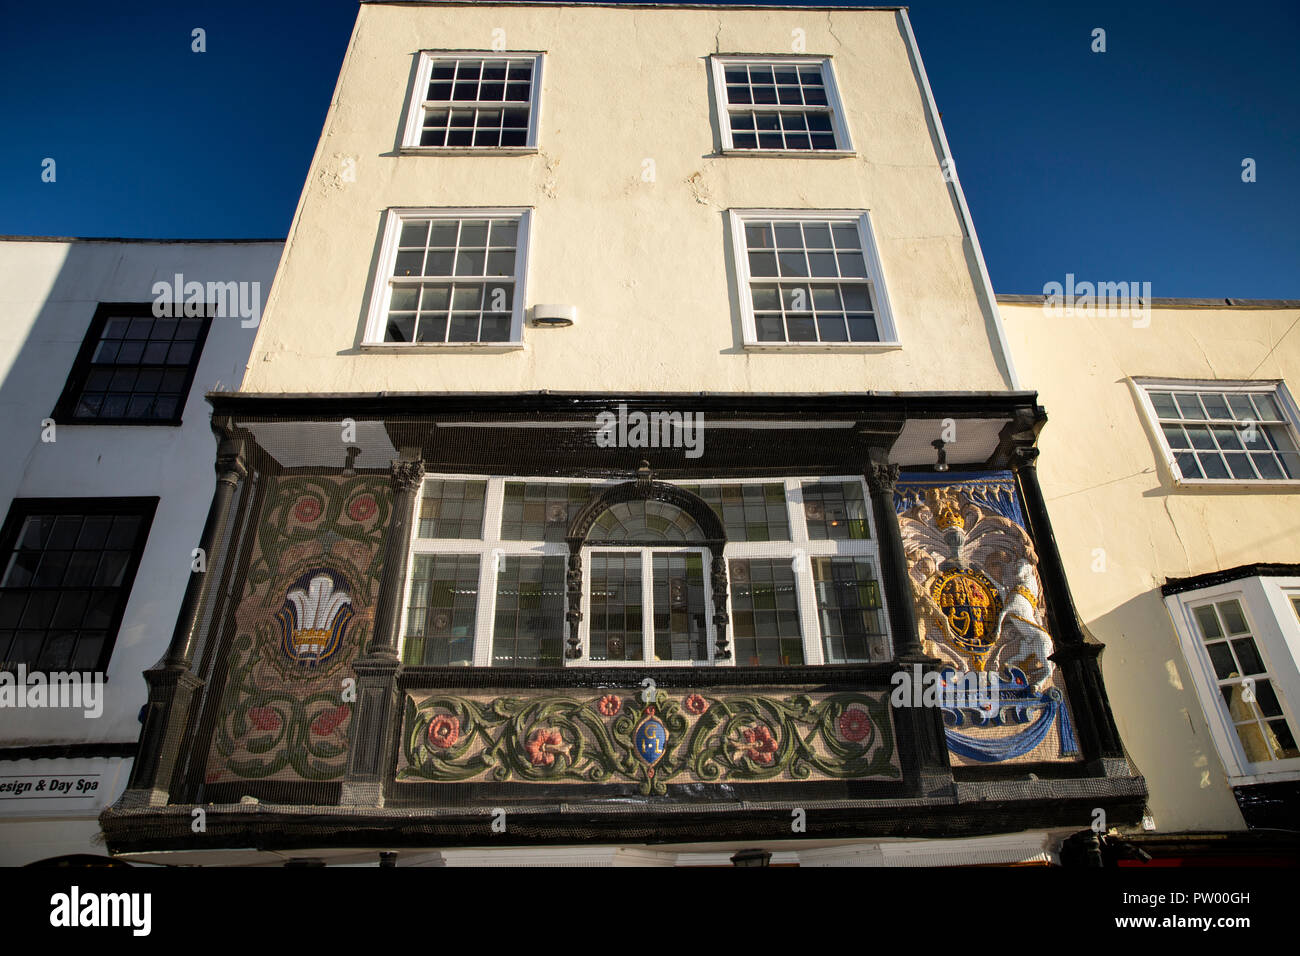 Regno Unito, Kent, Maidstone, centro città, 78 Bank Street, pargeting colorate sulla struttura di legno jettied facciata di edificio Foto Stock